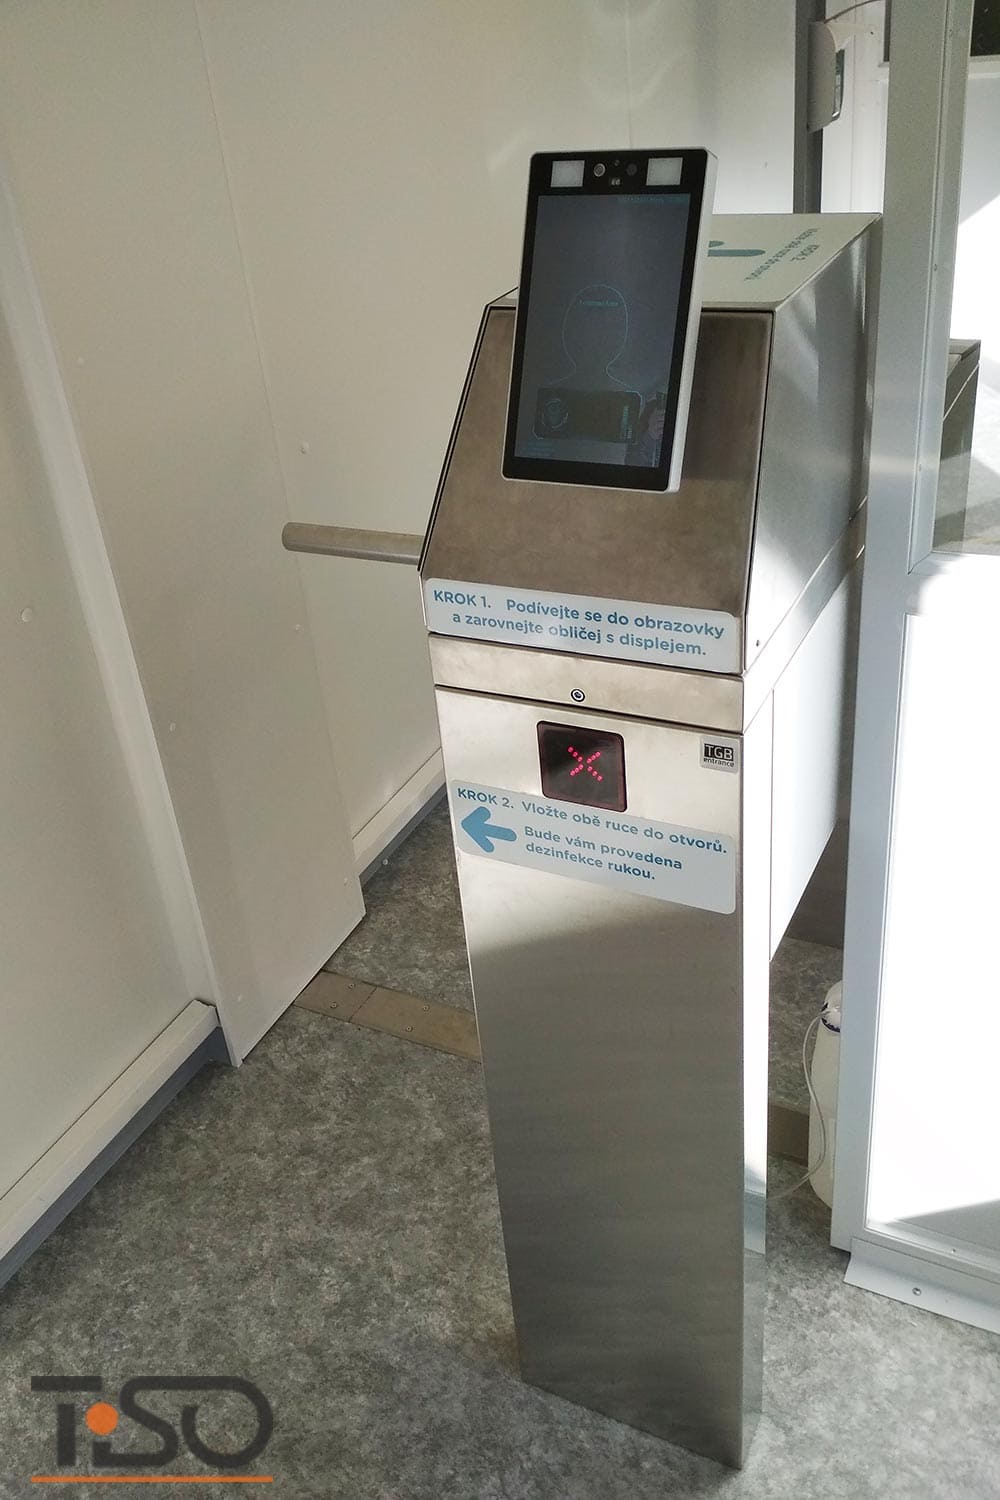 Twix-M și sistem automat de dezinfecție a mâinilor, spitalul Horovice, Cehia